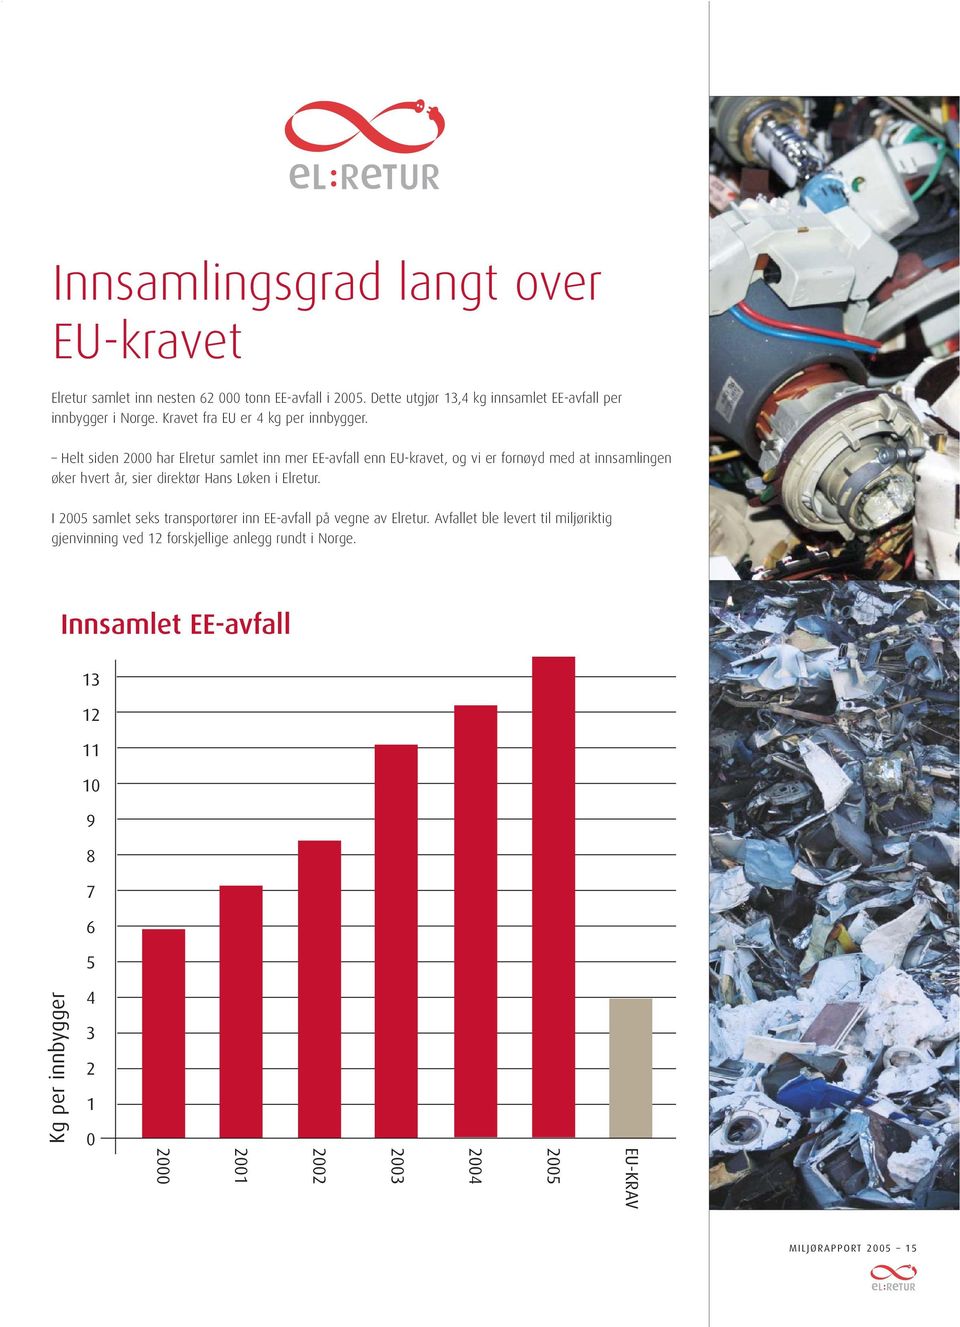 Helt siden 2000 har Elretur samlet inn mer EE-avfall enn EU-kravet, og vi er fornøyd med at innsamlingen øker hvert år, sier direktør Hans Løken i Elretur.